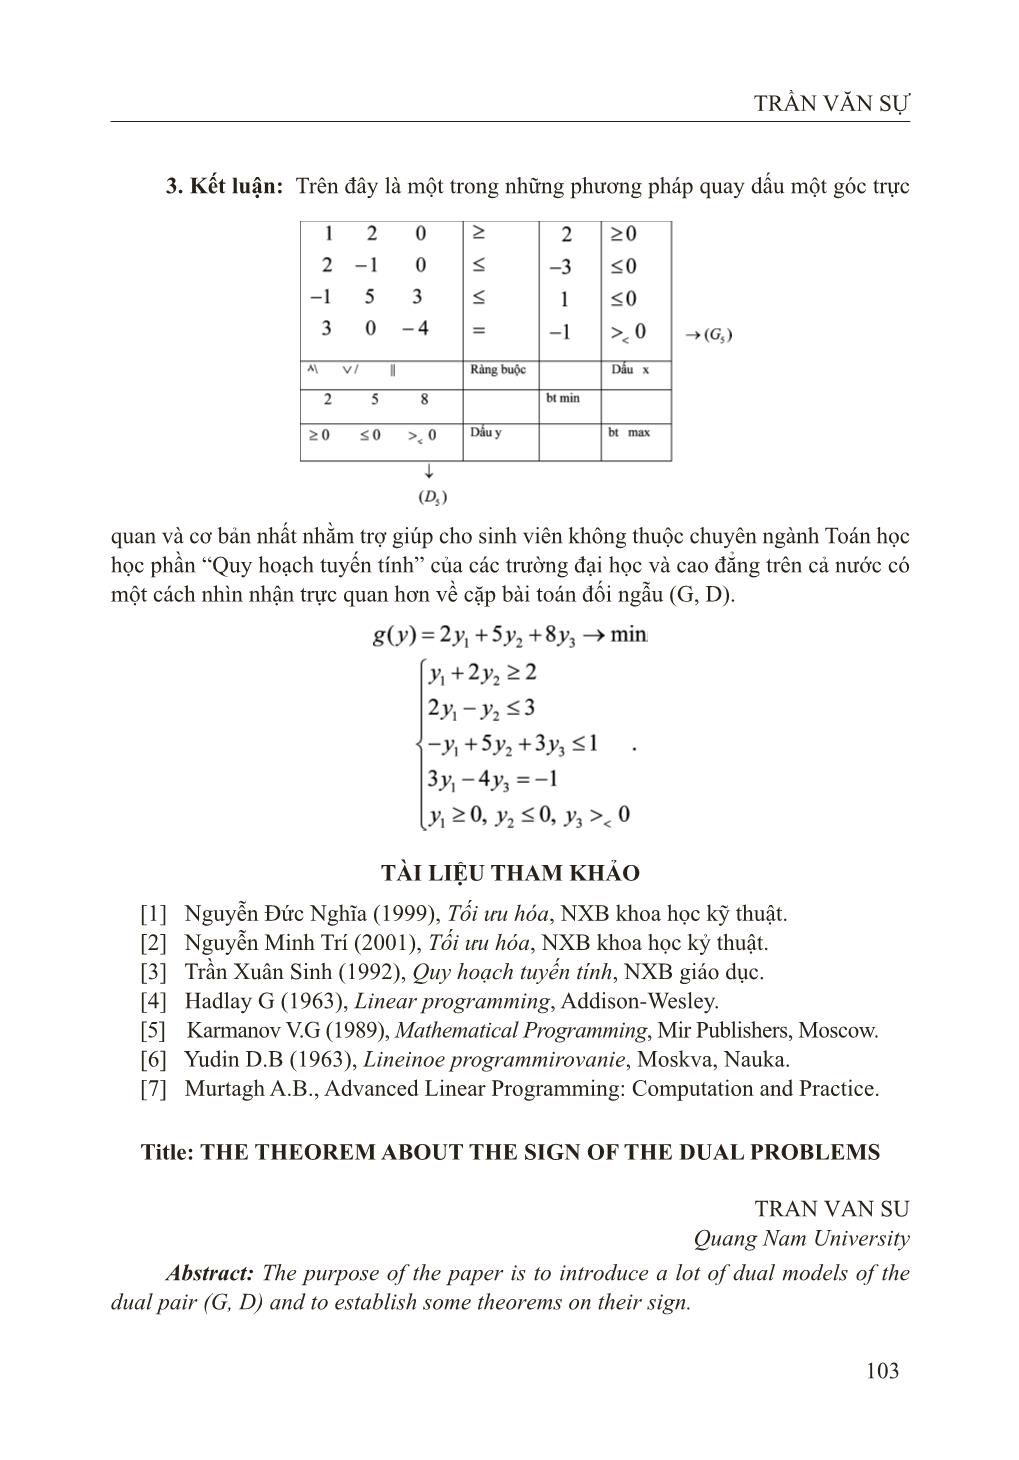 Định lý về dấu của bài toán đối ngẫu trang 7